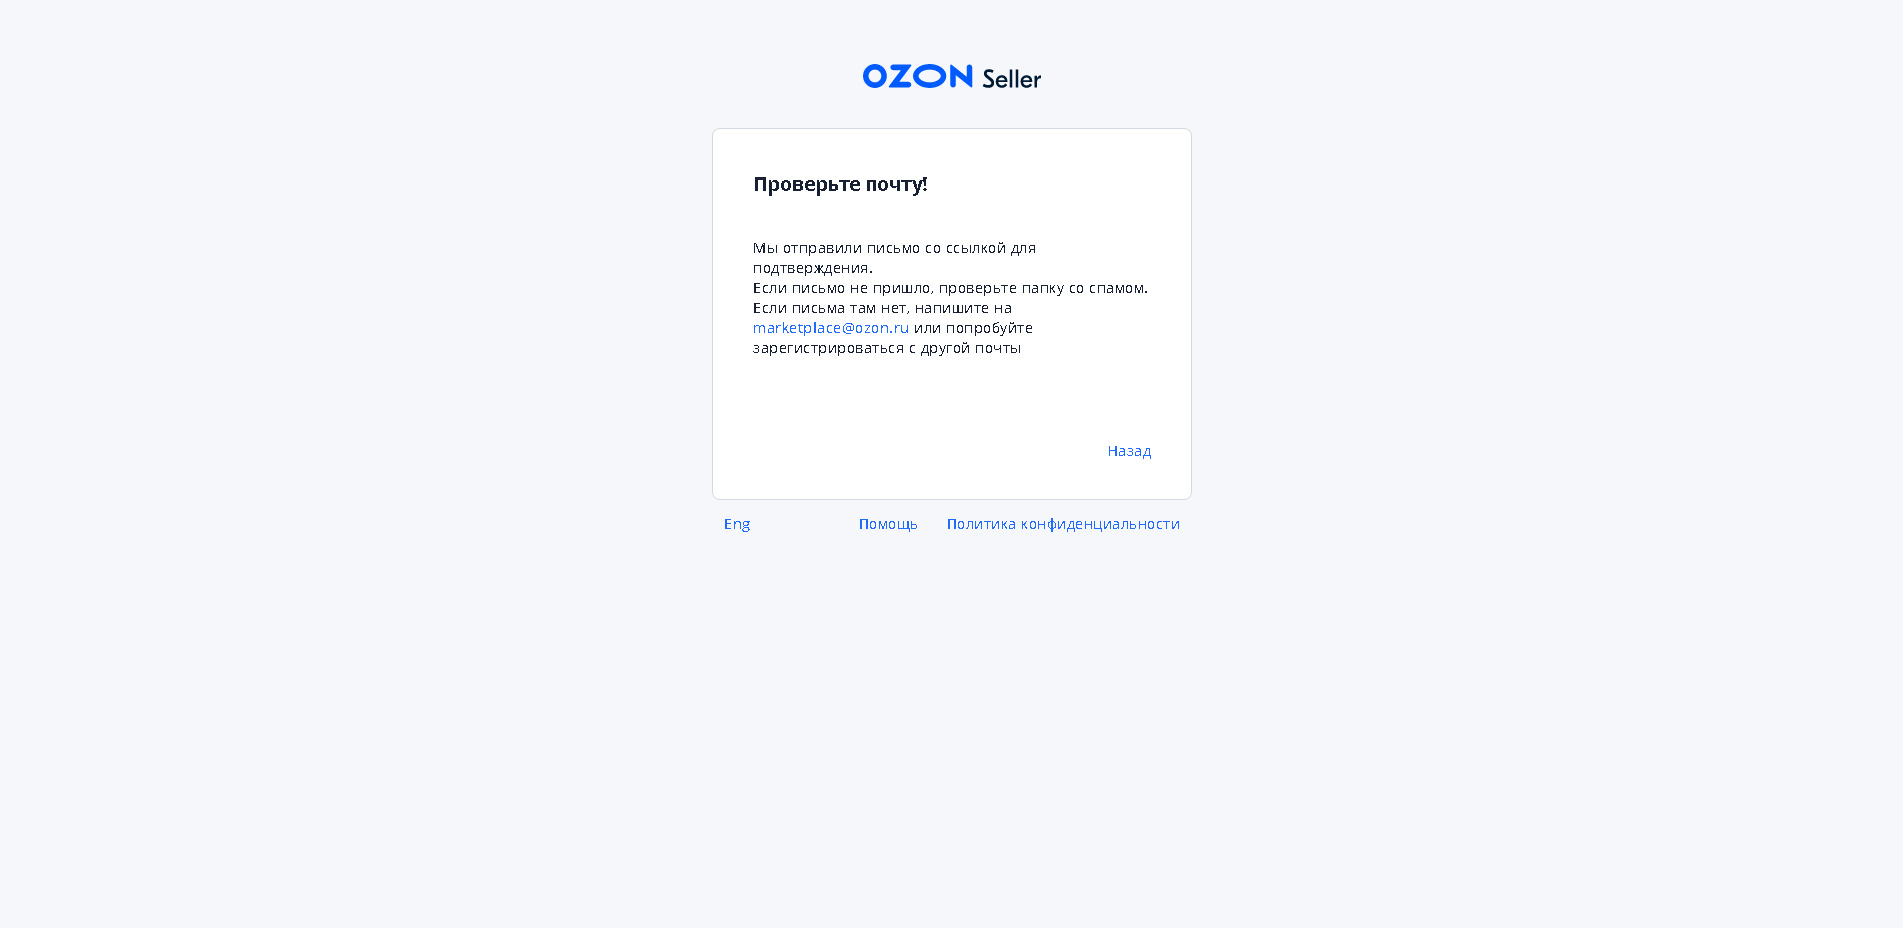 Сбор данных клиента озон тест ответы. Тестирование Озон. Ответы на тест Озон. Ответы на тест Озон курьер. Тест OZON ответы.